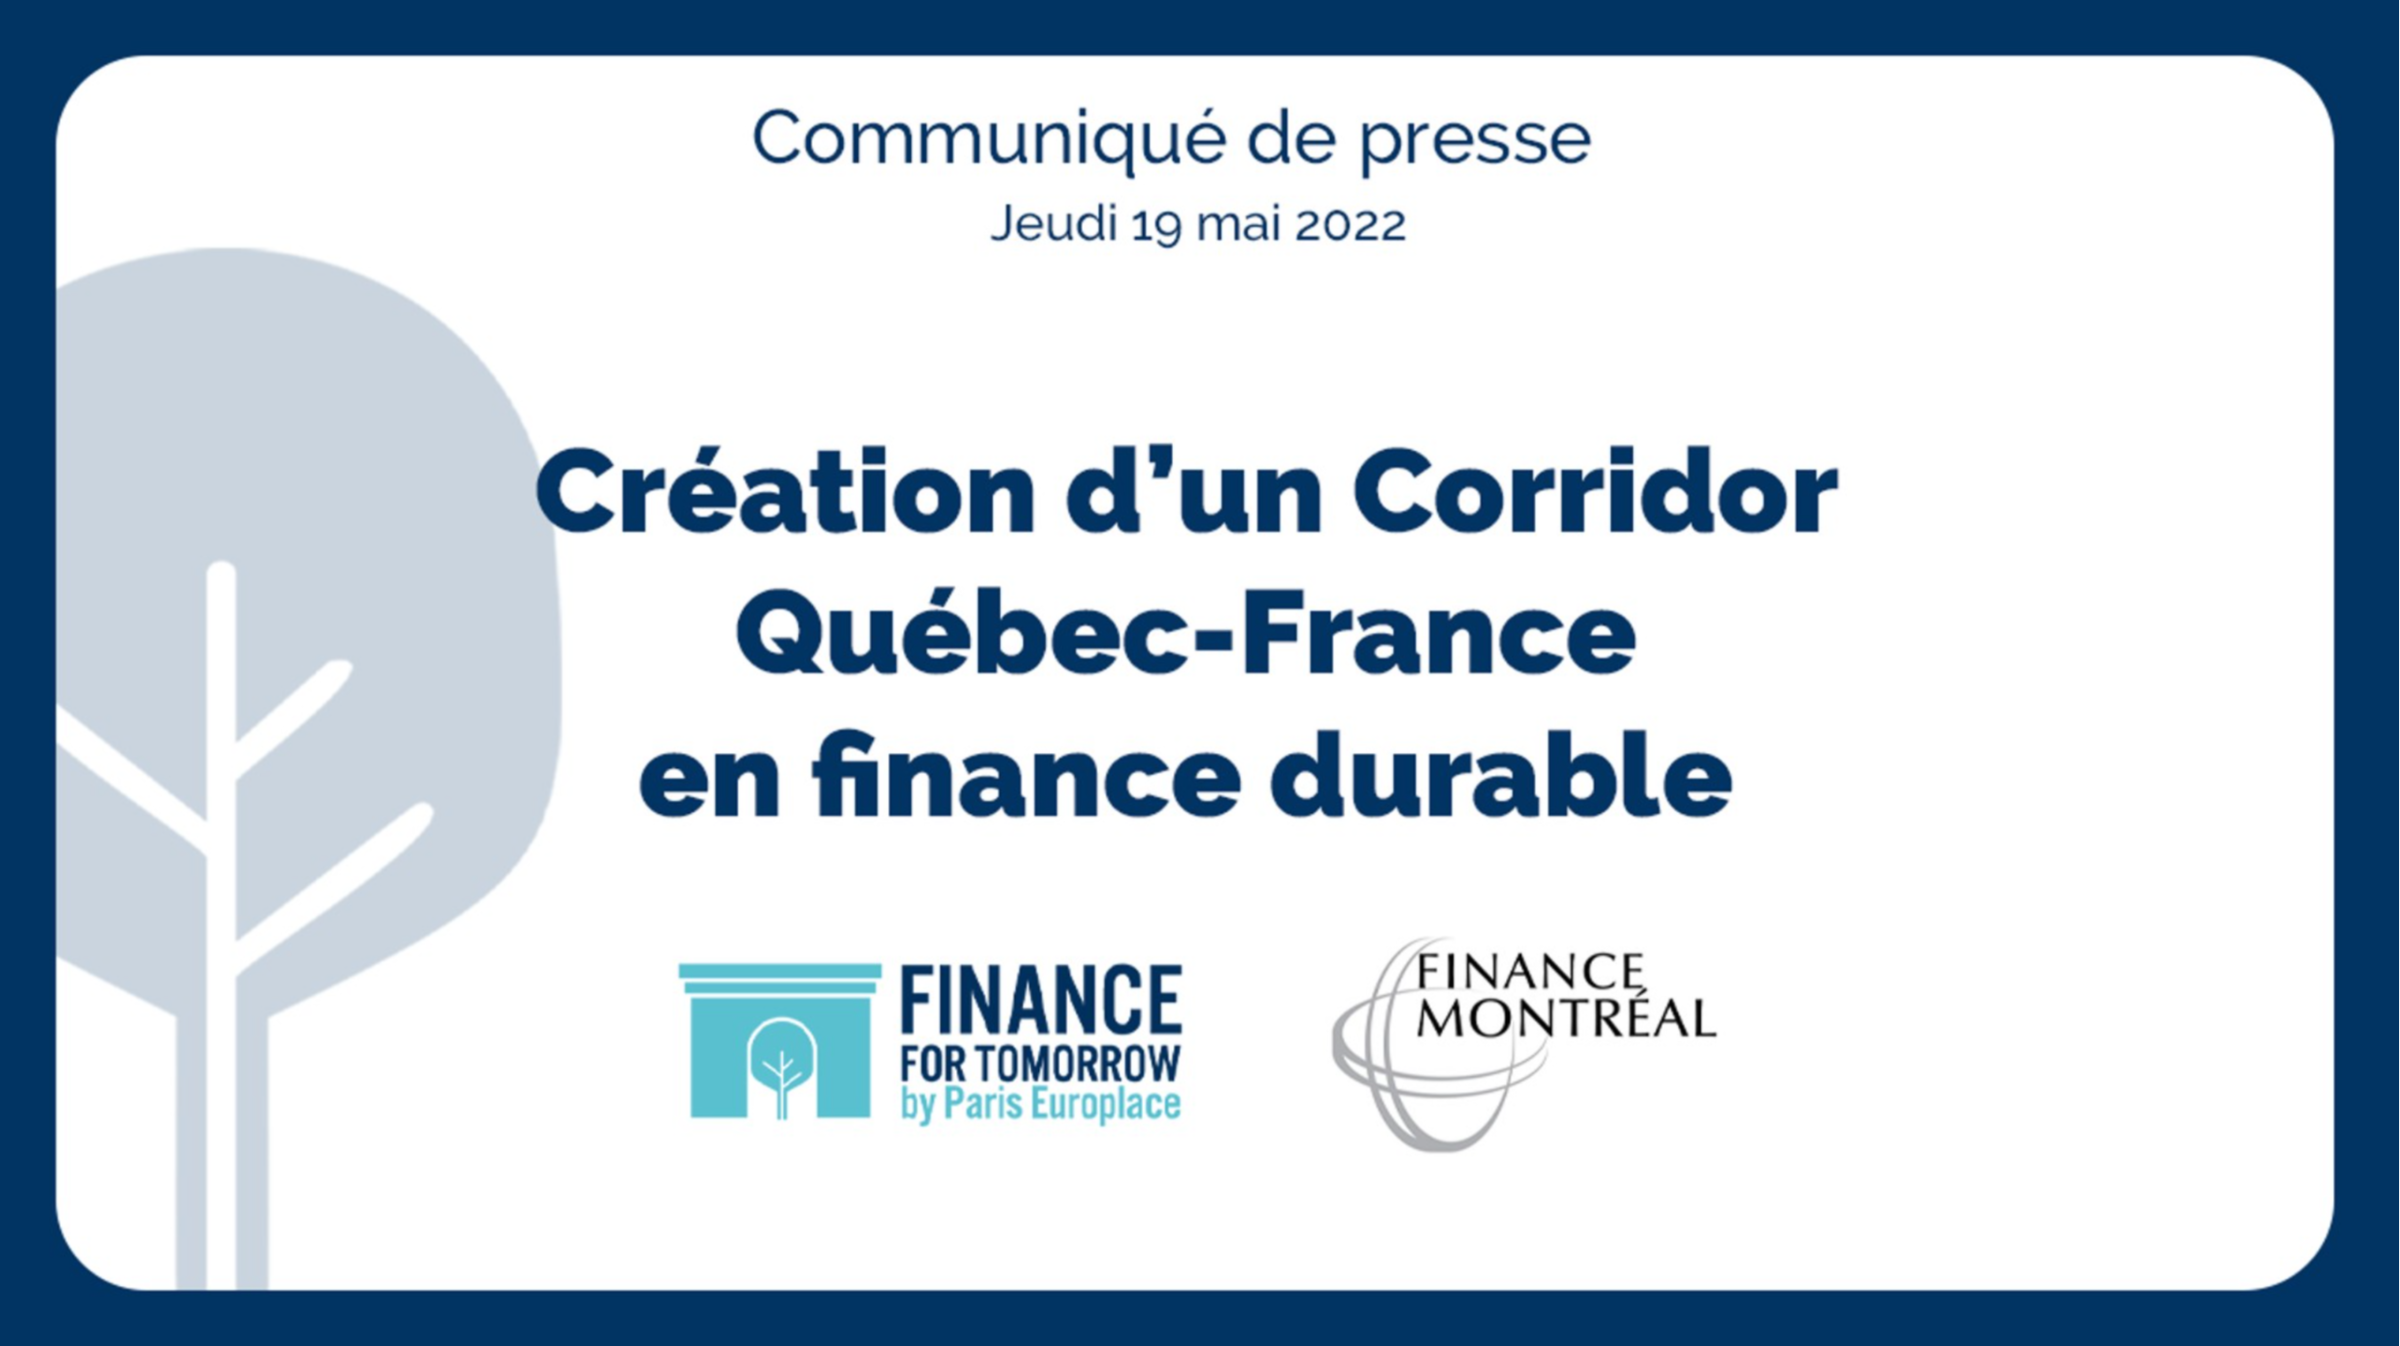 Convergence de deux pôles d’excellence en finance durable : création d’un Corridor Québec-France en finance durable